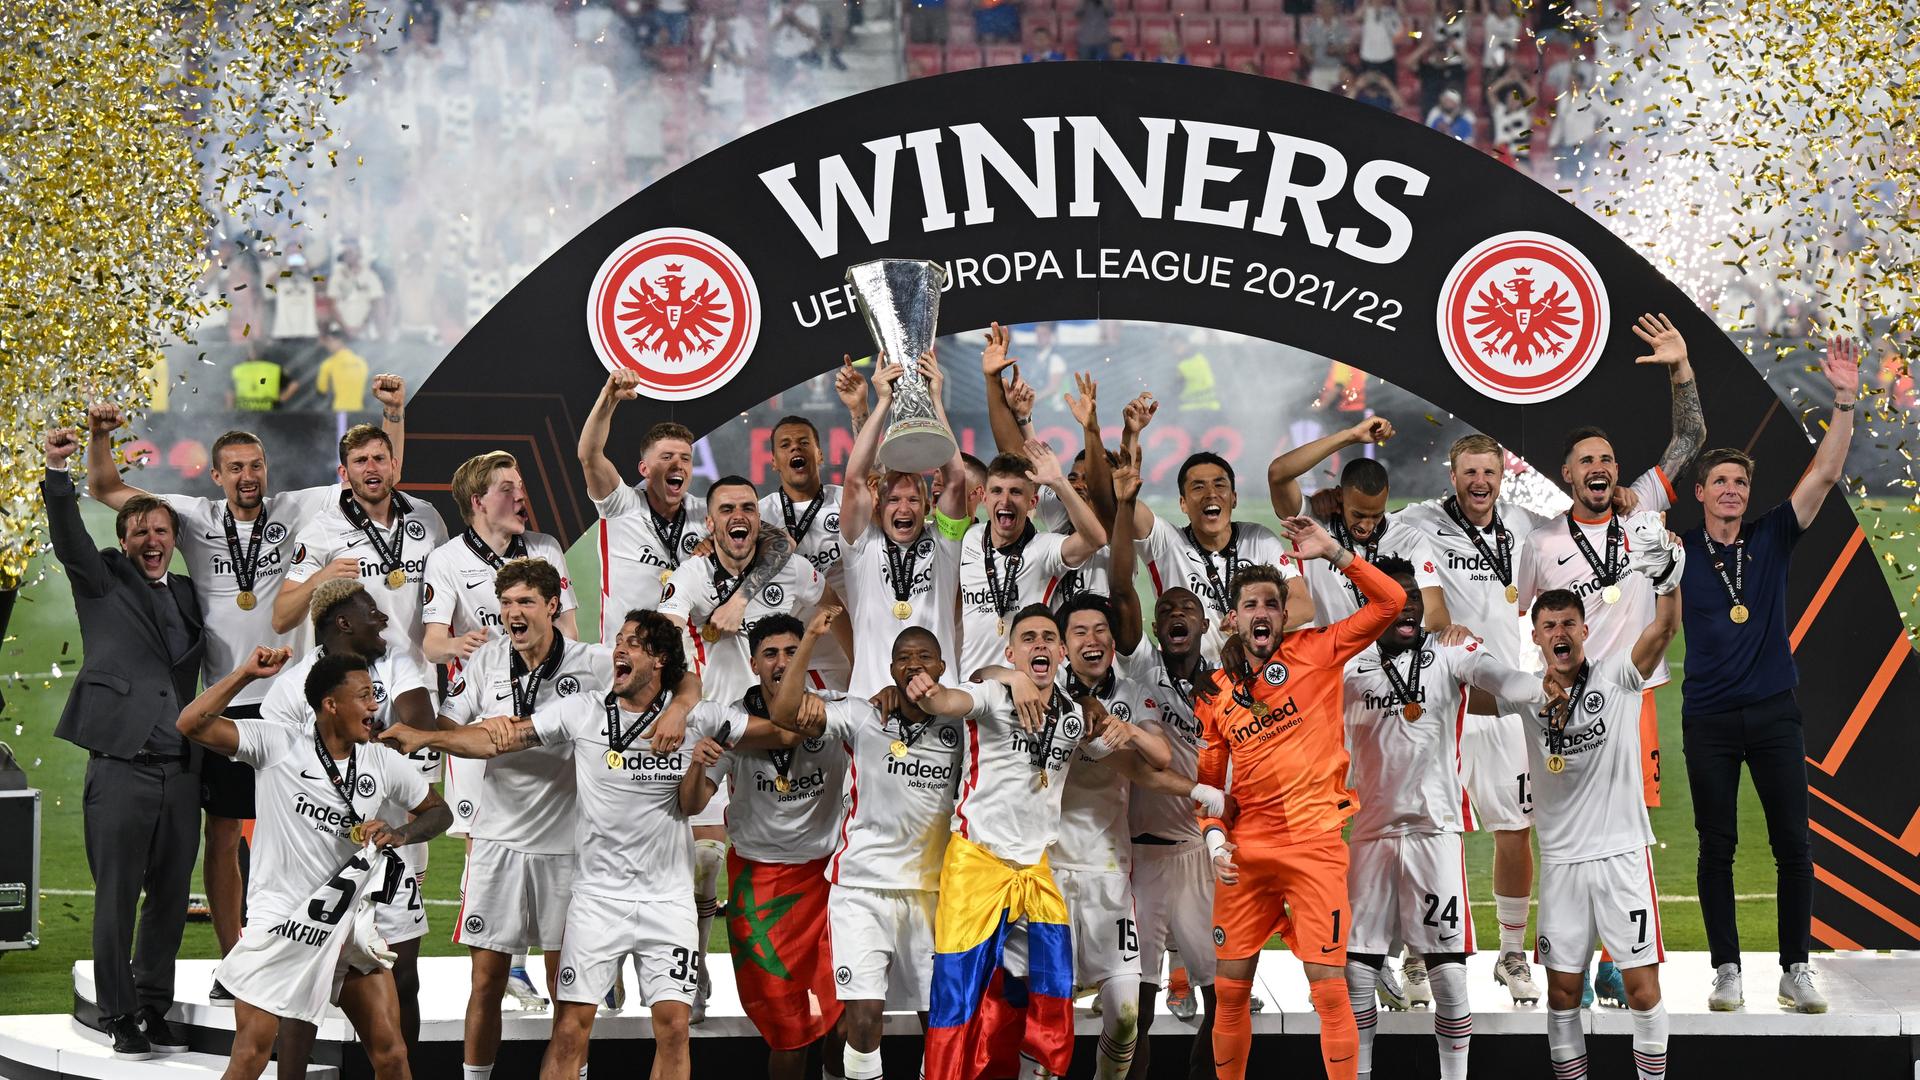 Die Spieler von Eintracht Frankfurt jubeln über den Gewinn  der Europa League. Sie stehen unter einem Bogen, auf dem groß geschrieben "Winners - UEFA Europa Legue 2021/22" zu lesen ist. Einer der Spieler reckt den Pokal in die Höhe.